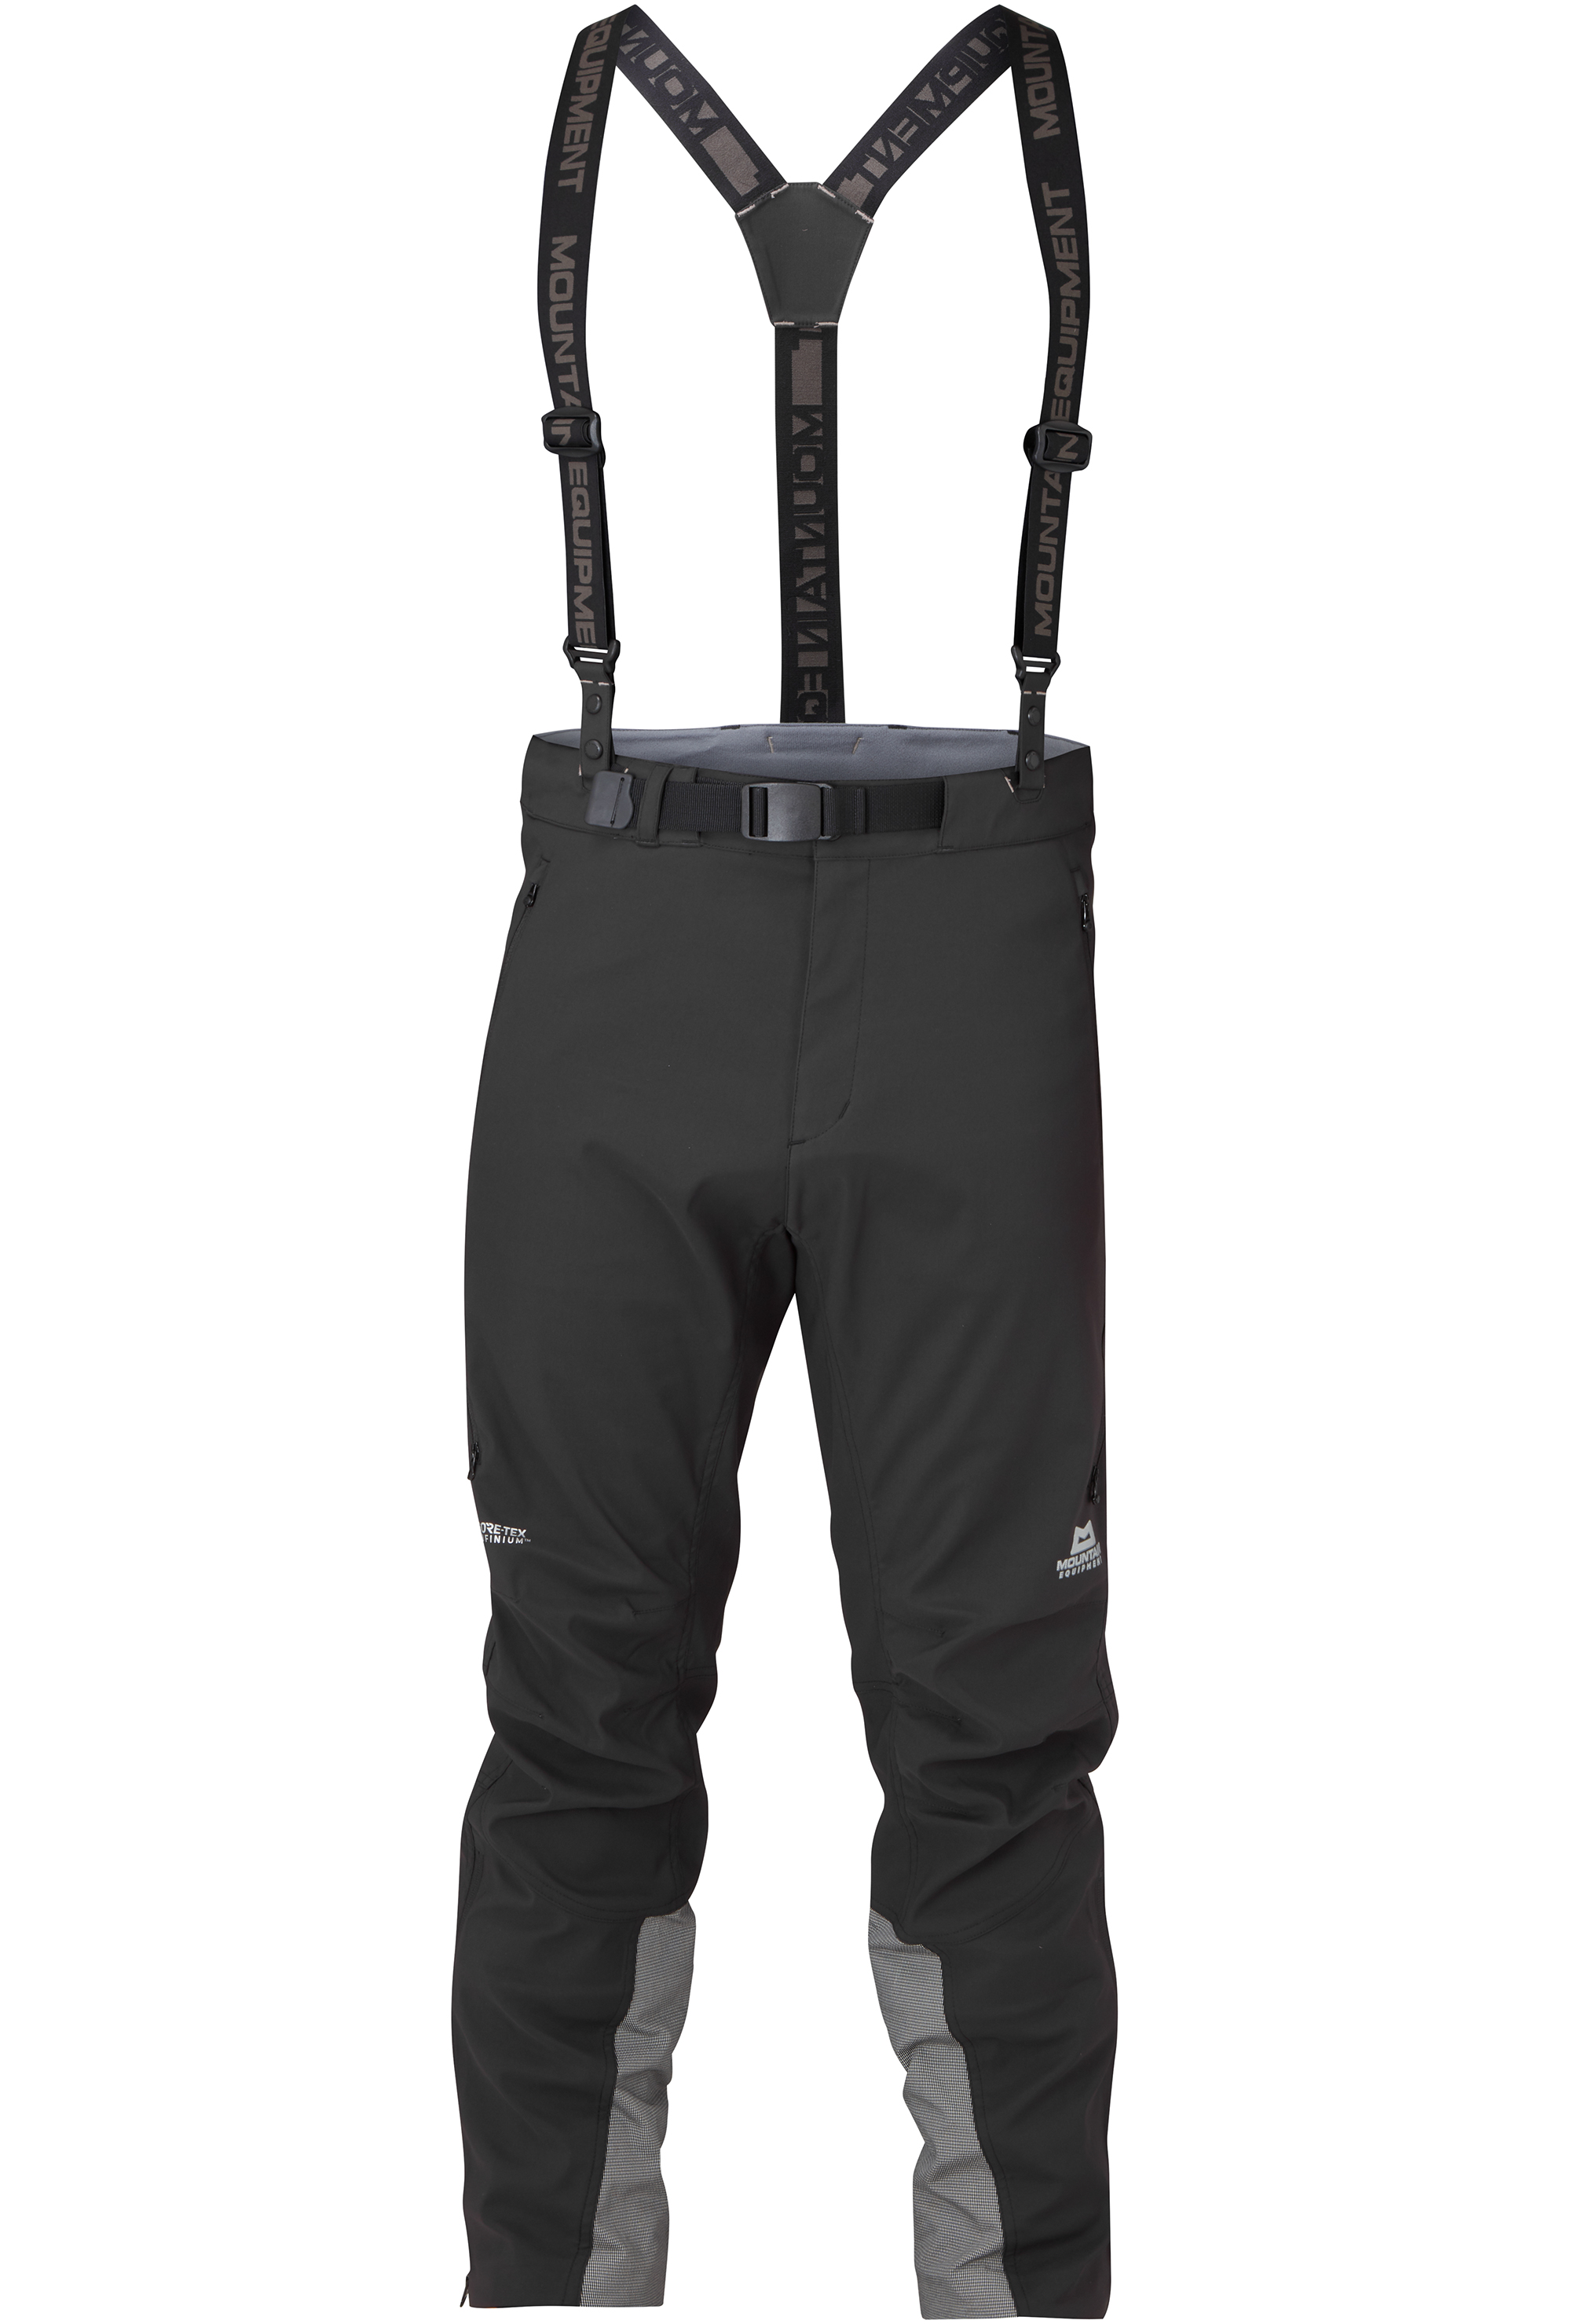 Mountain Equipment pánské softshellové kalhoty G2 Mountain Pant - prodloužené Barva: black, Velikost: 38/XXL